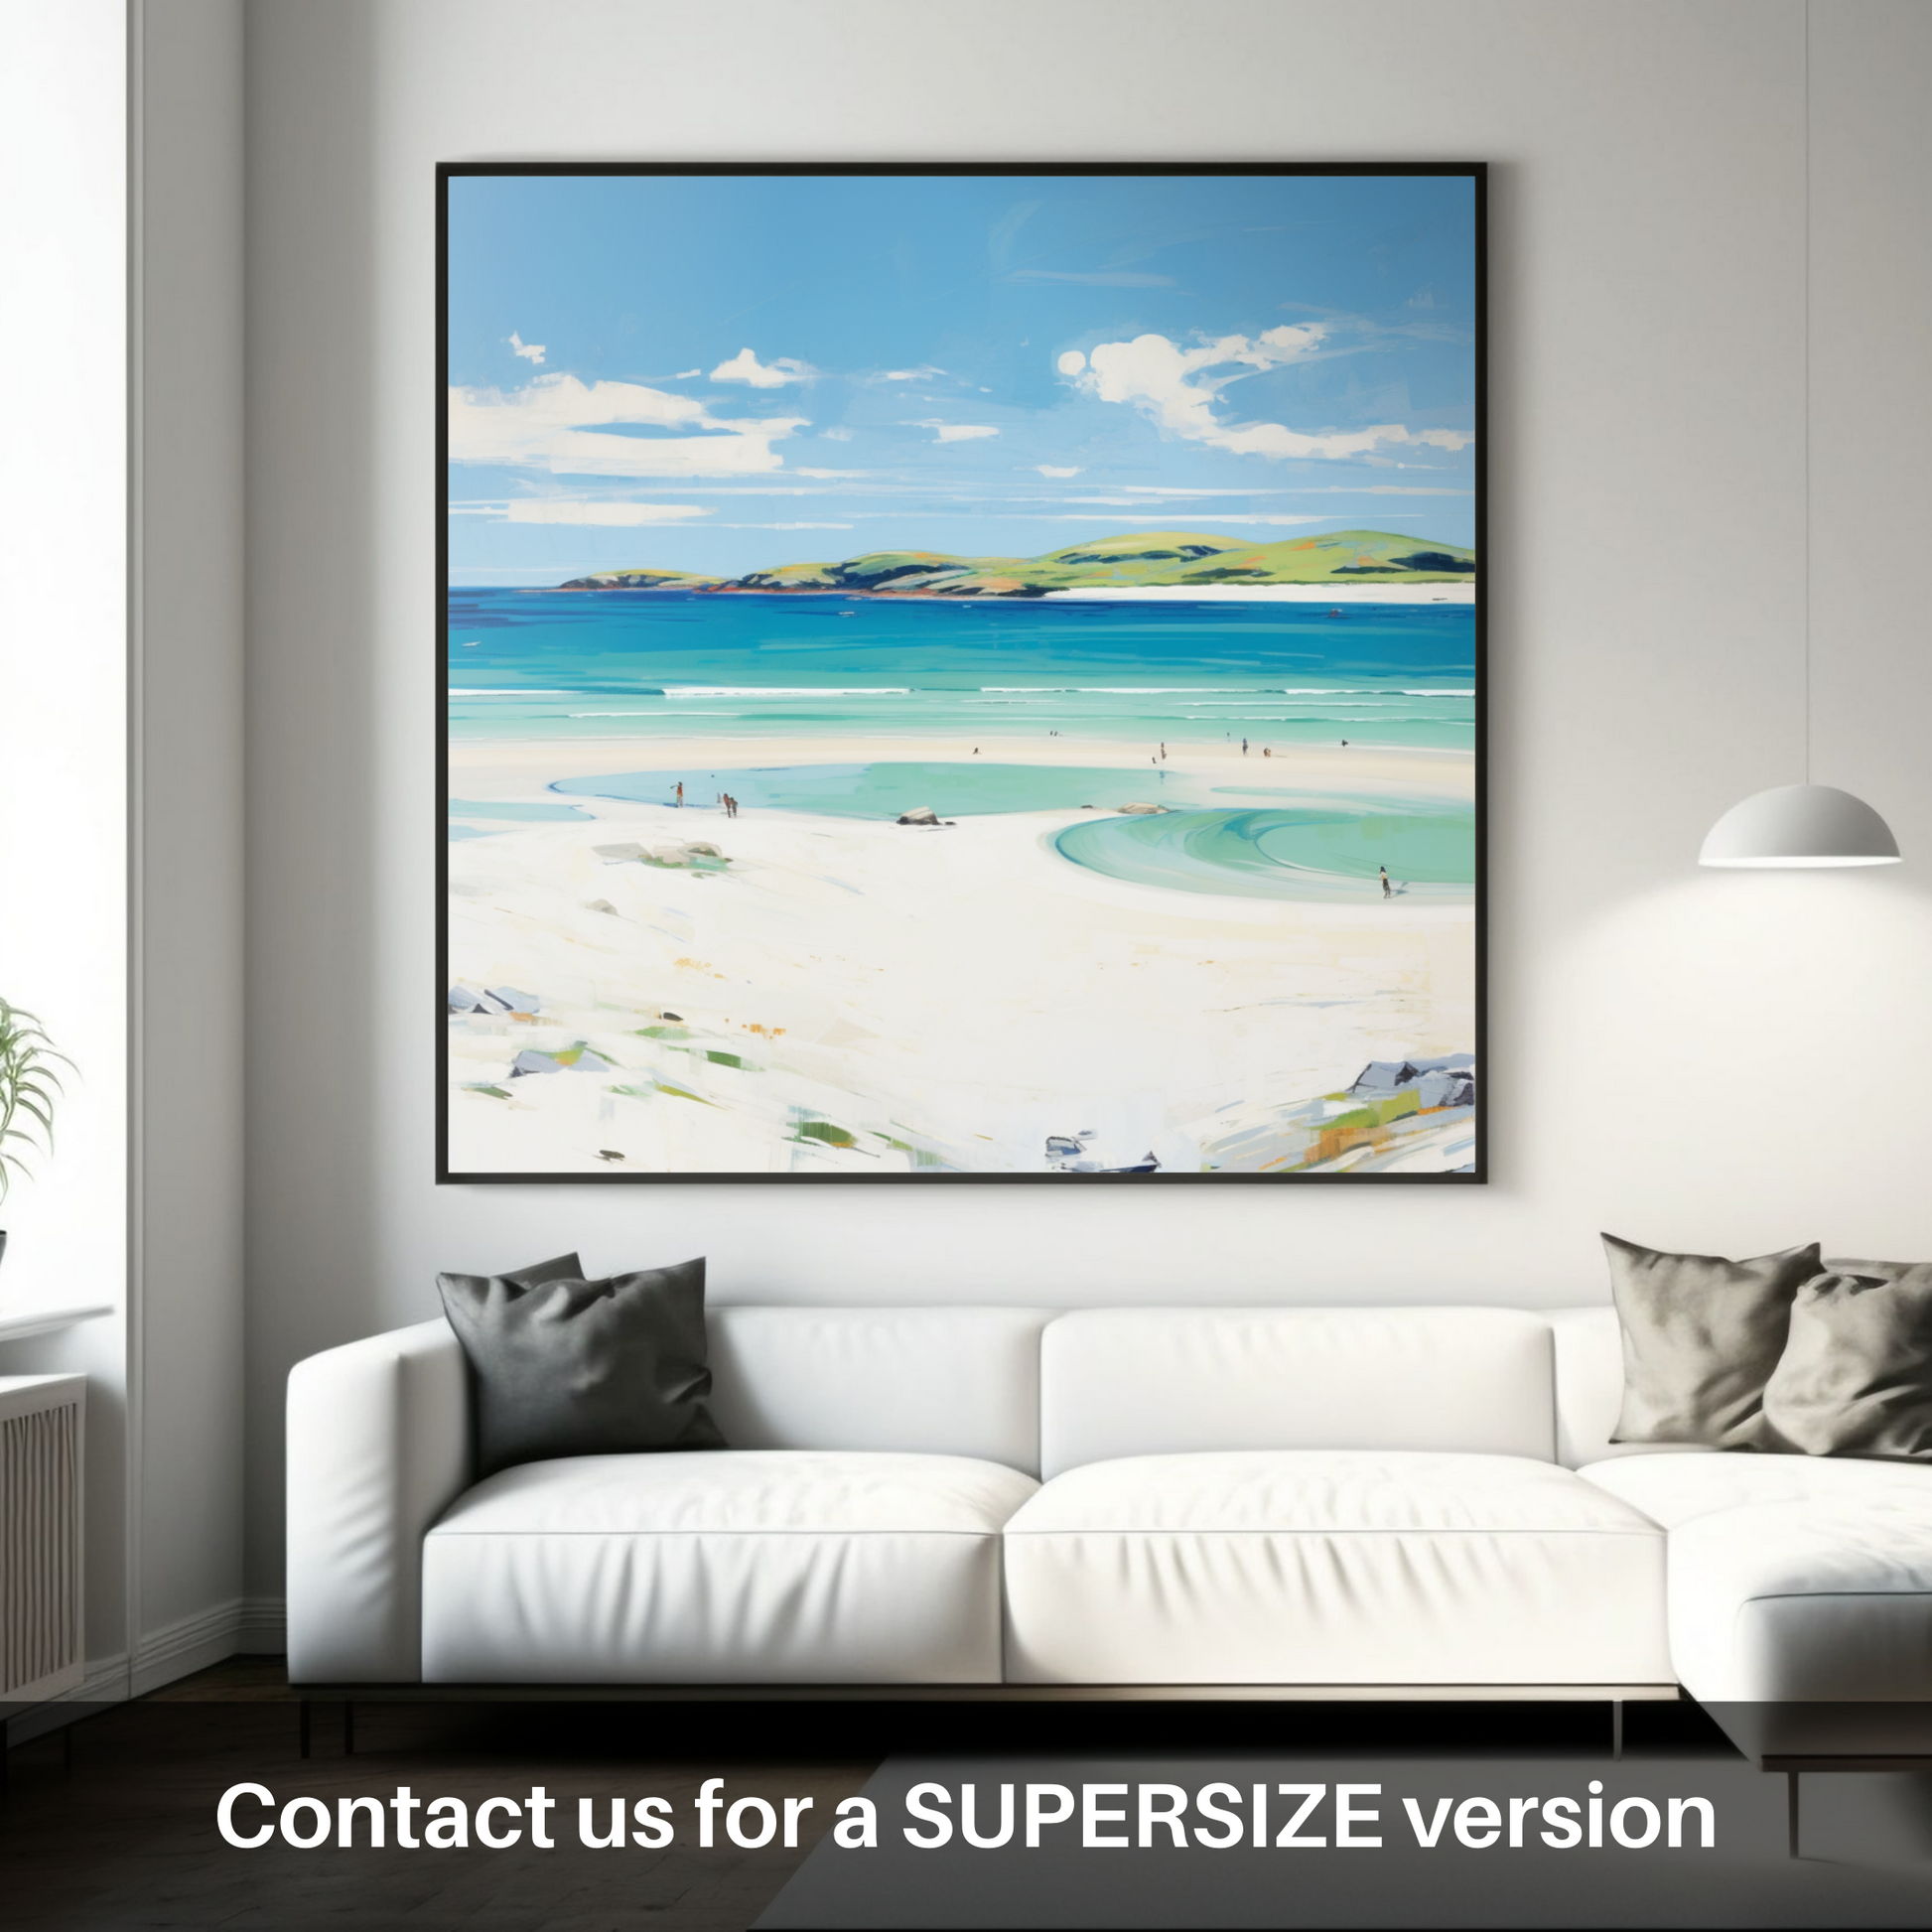 Huge supersize print of Luskentyre Beach, Isle of Harris in summer